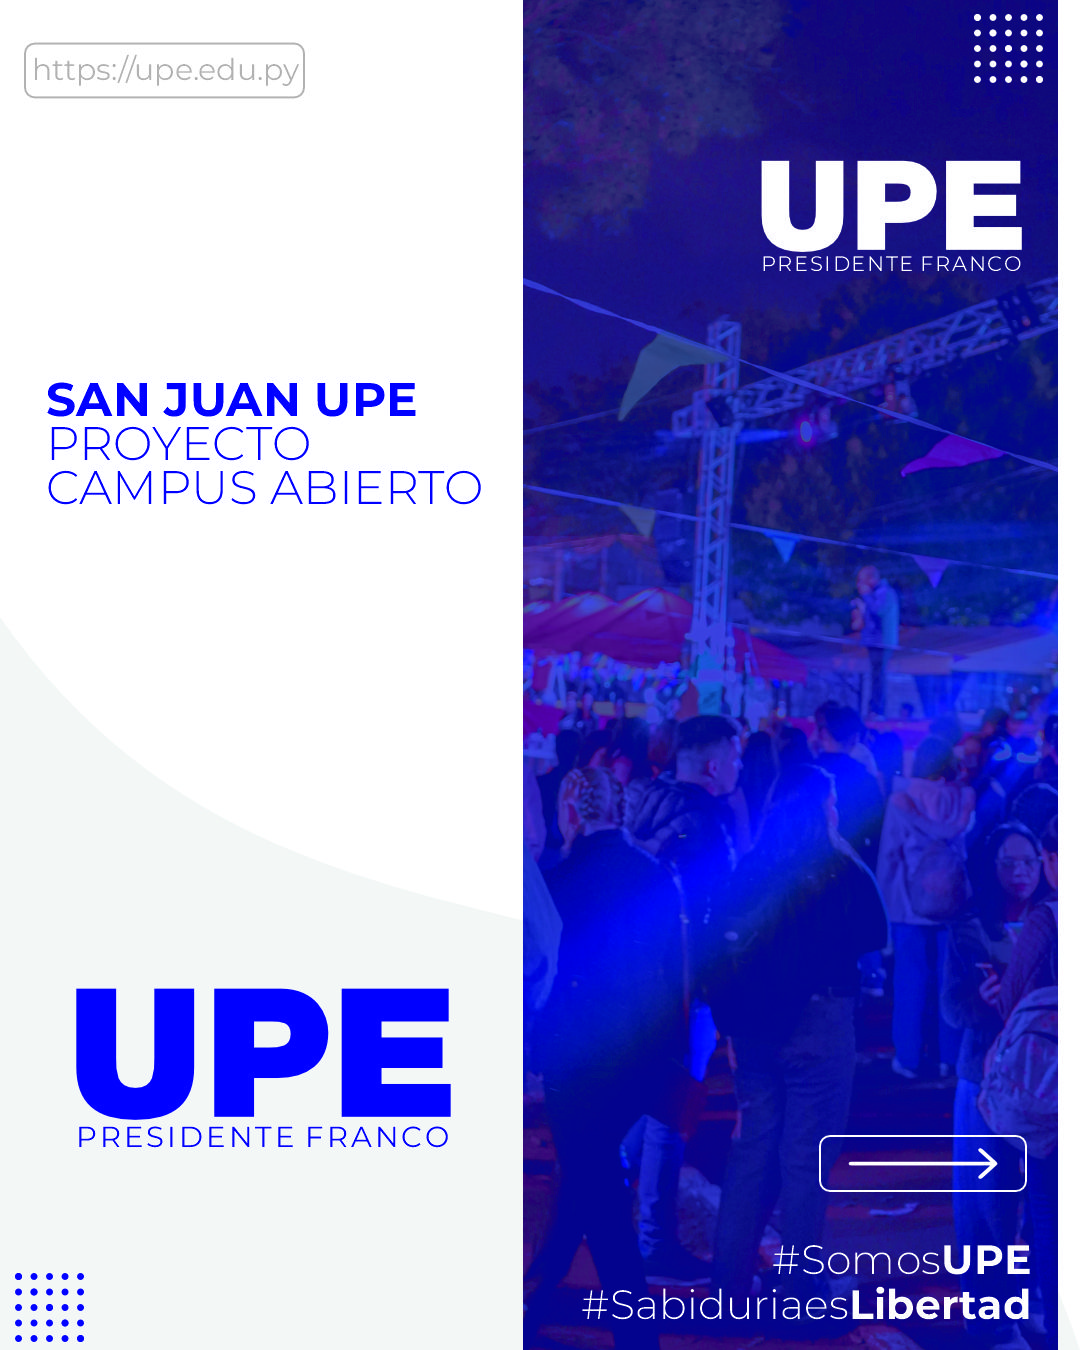 La UPE inició gestión de su proyecto “Campus abierto”